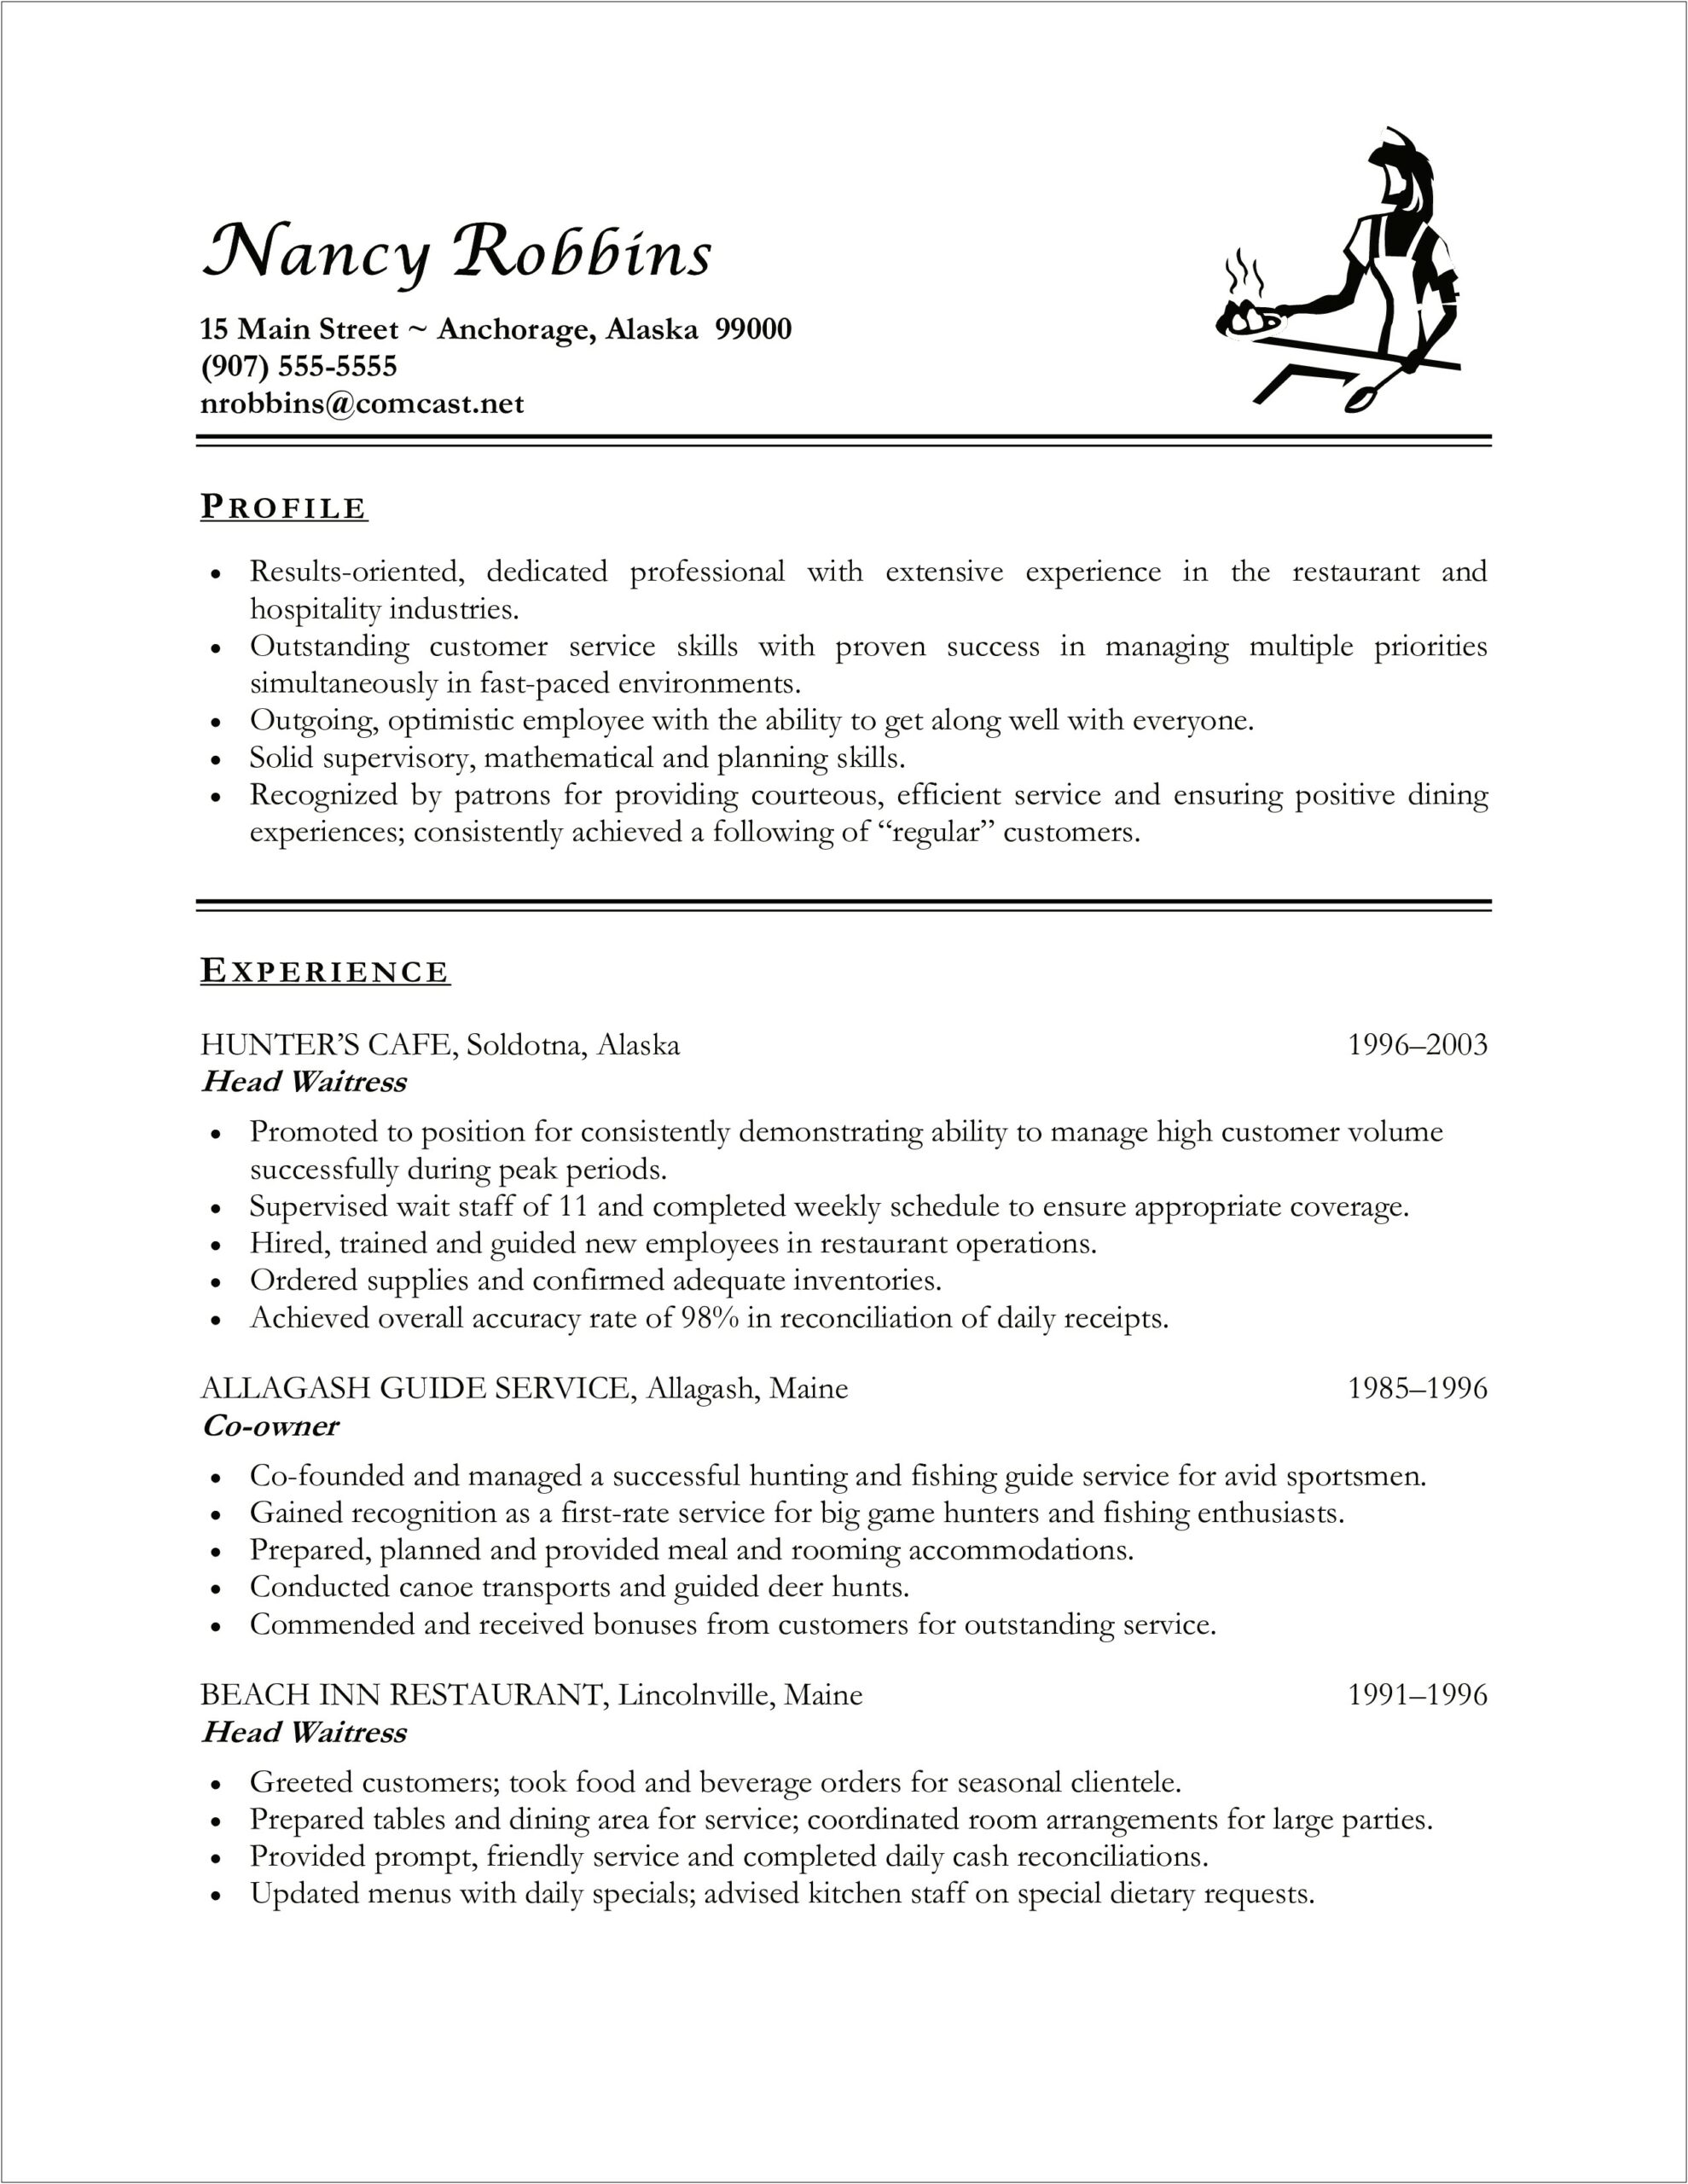 Sample Resume For Head Waitress